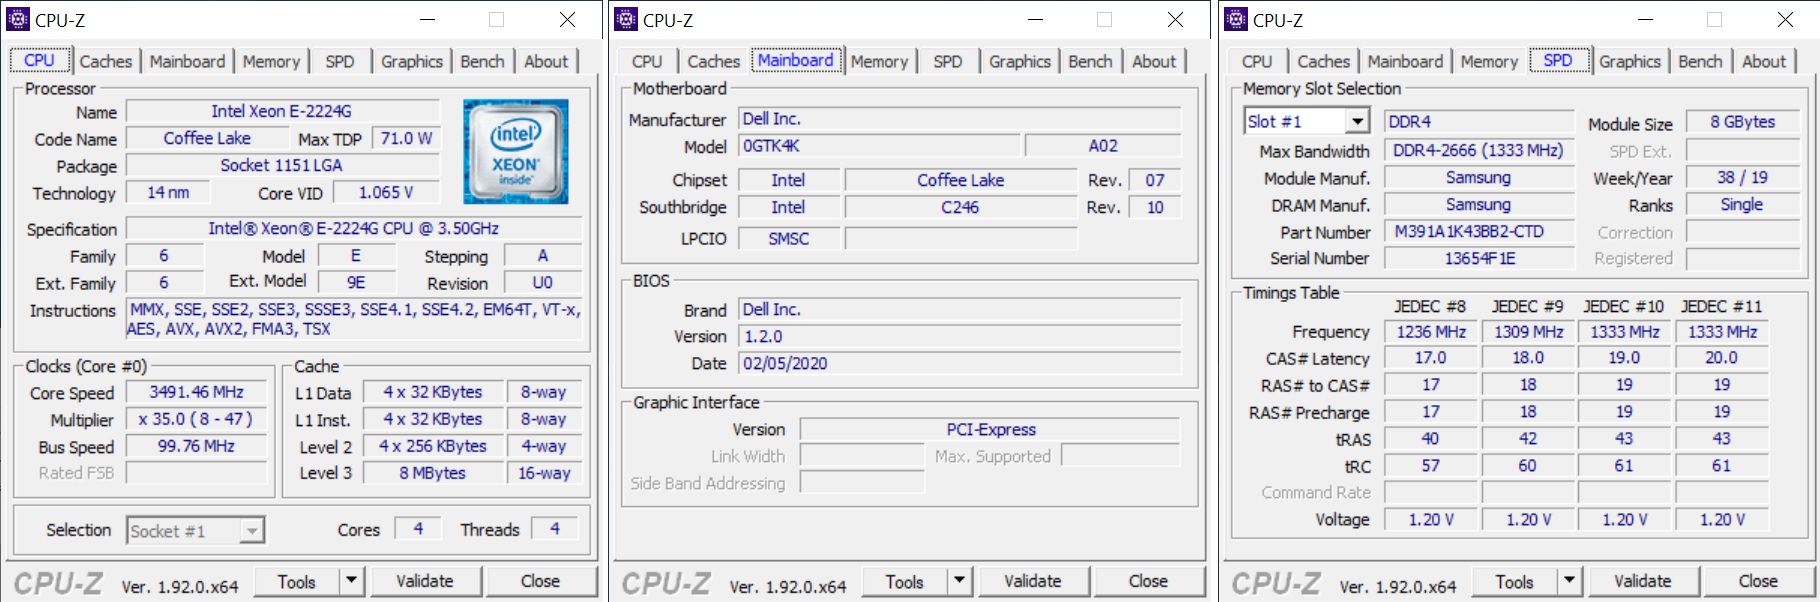 Dell PowerEdge T40 (9YP37) mit Intel Xeon E-2224G im Test